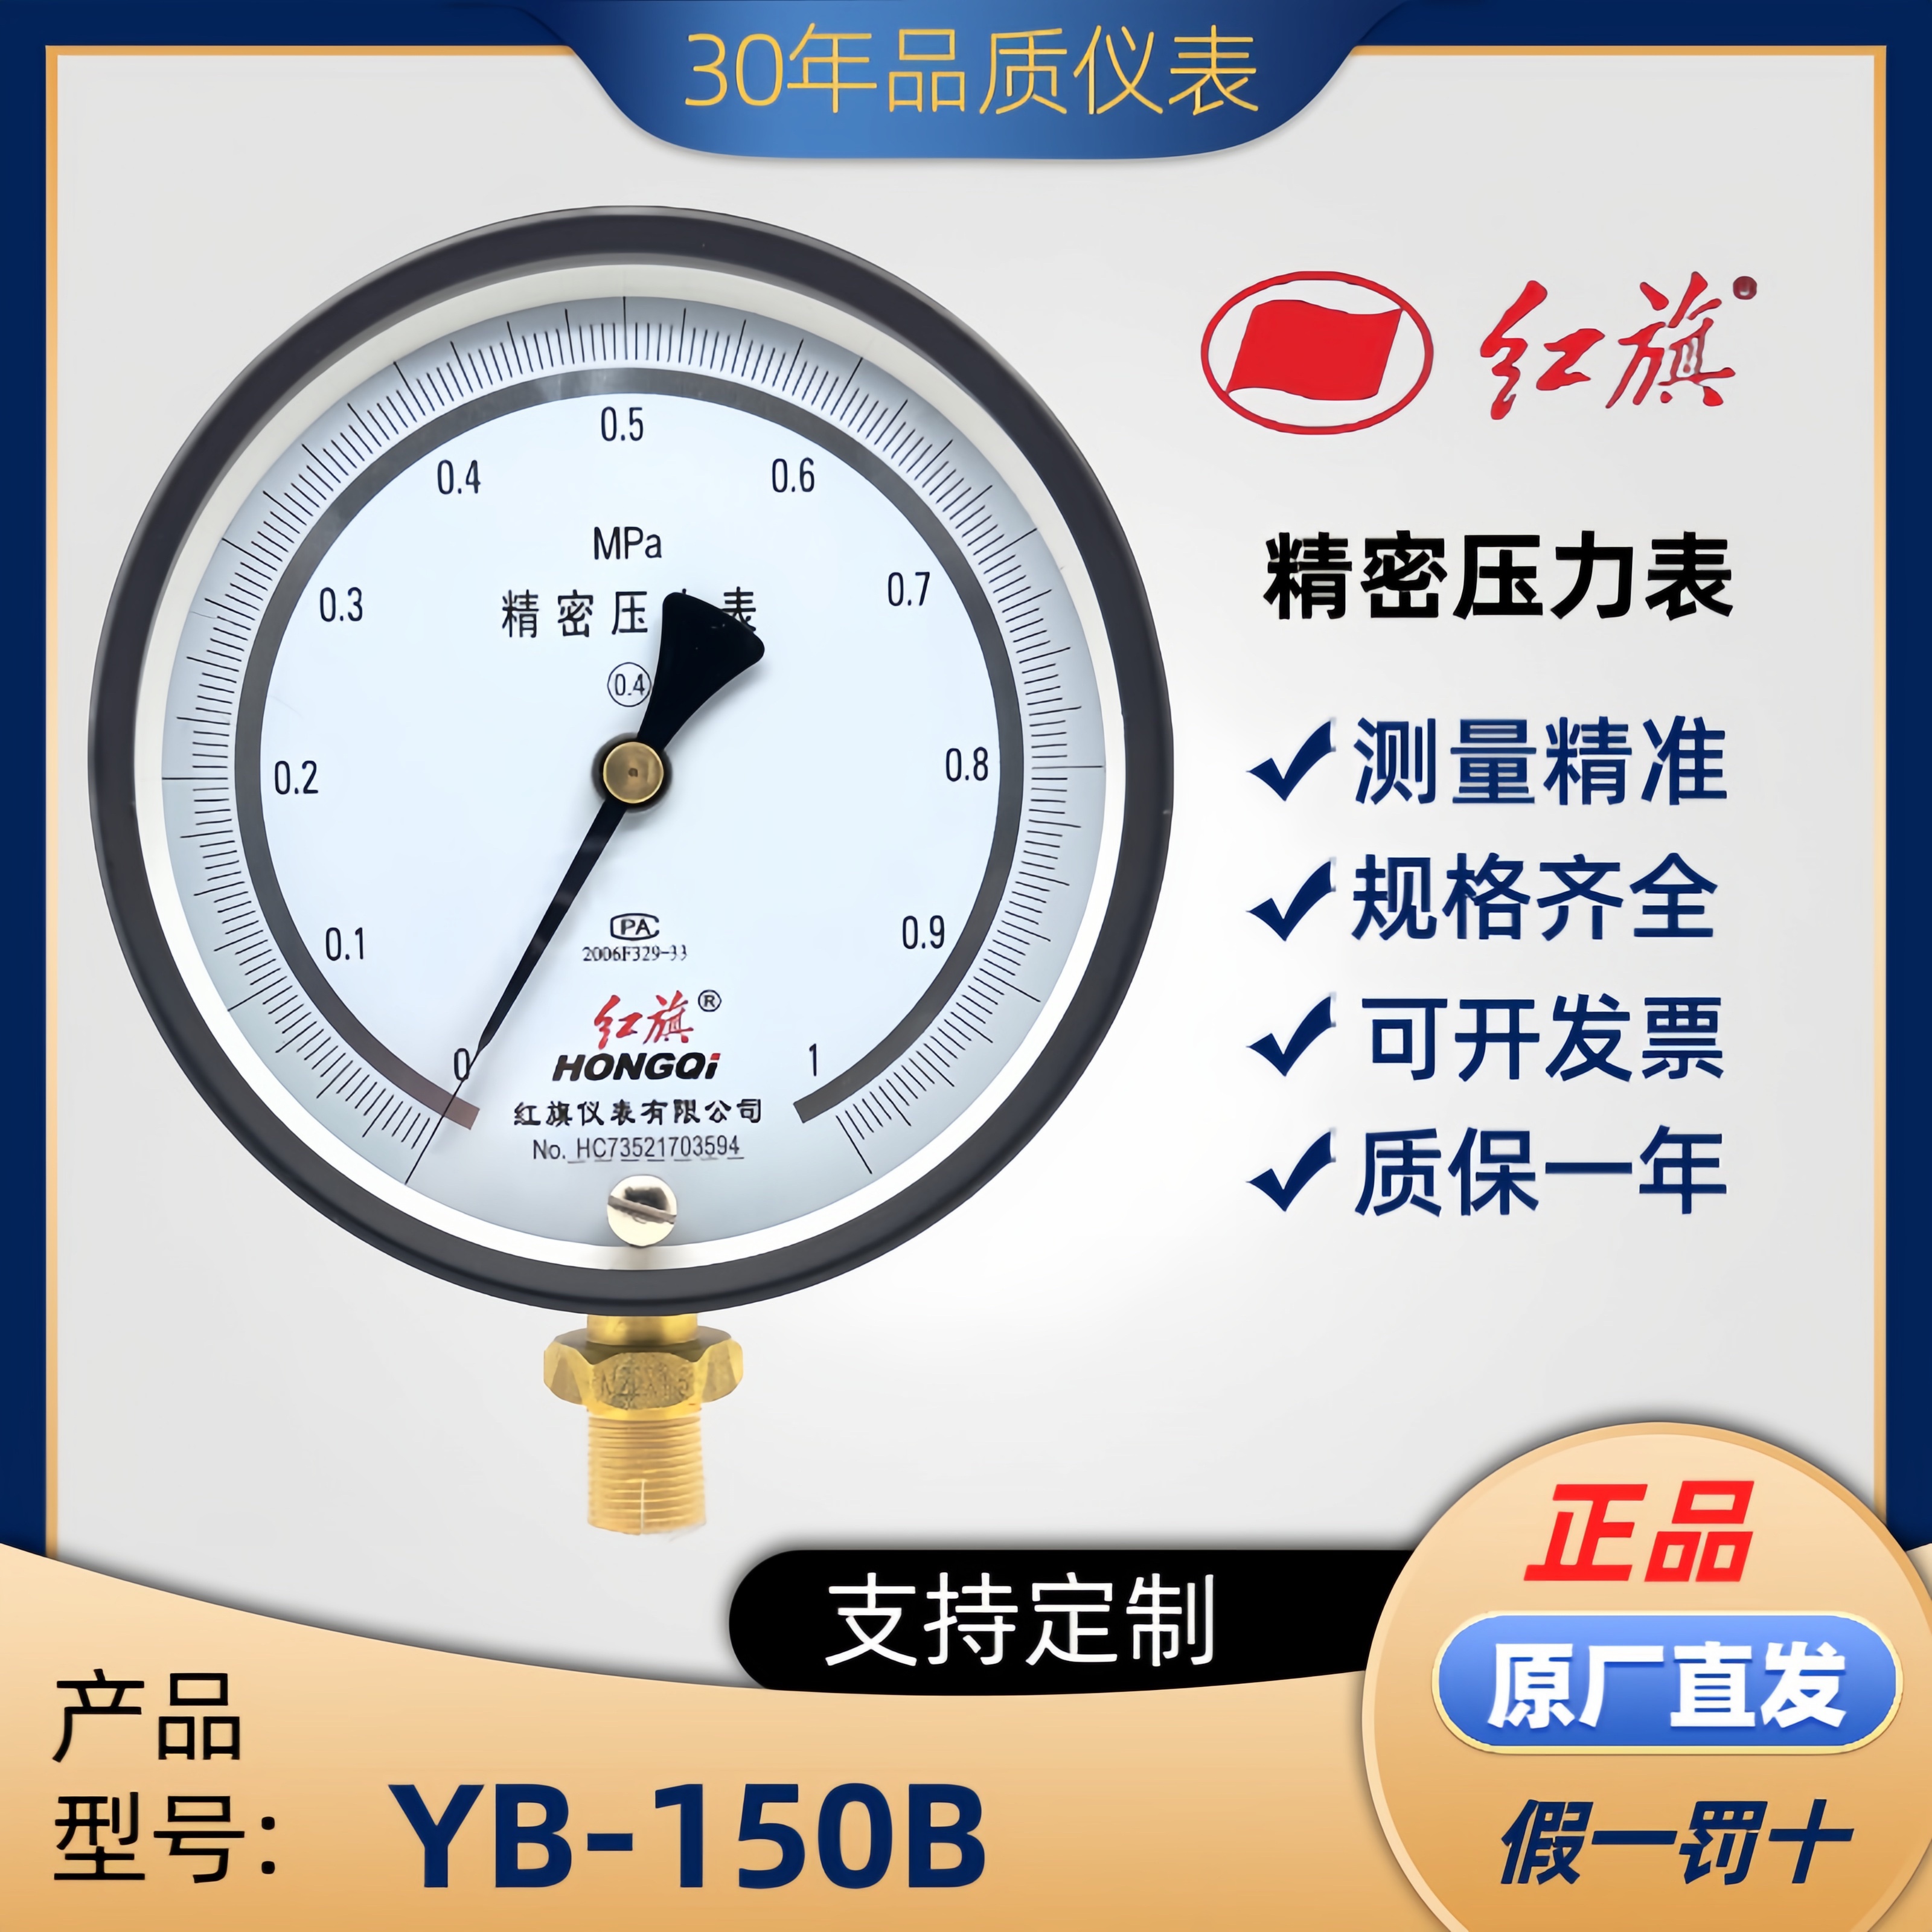 红旗正品0.4级0.25级精密压力表YB-150B气压水压高精度检测校准表